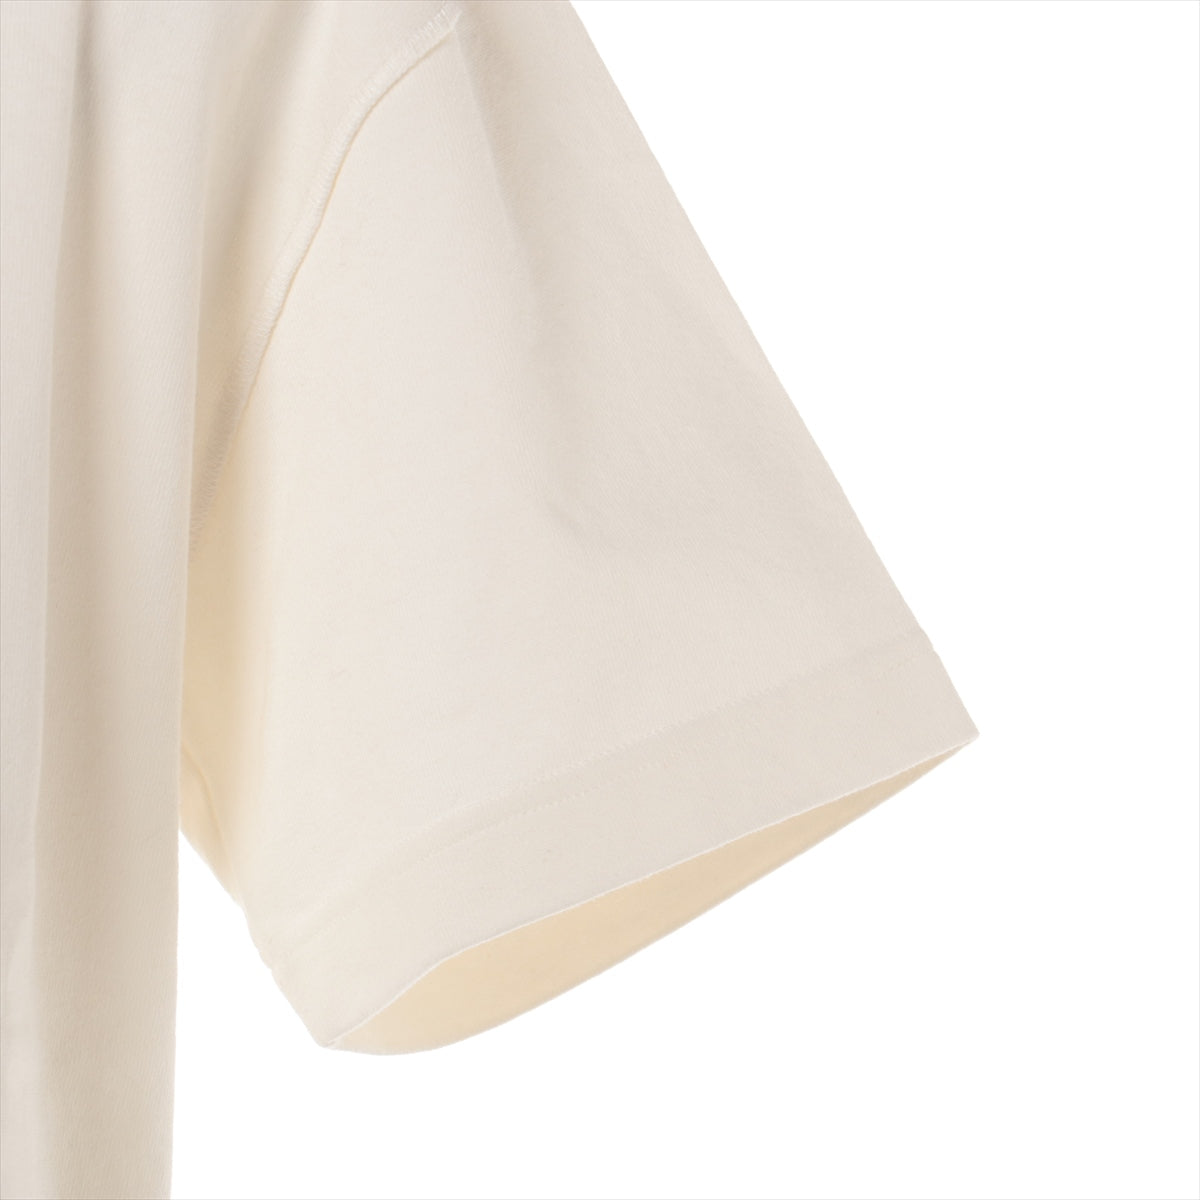 ルイヴィトン 23SS コットン Tシャツ S メンズ ホワイト  RM231 インサイドアウト